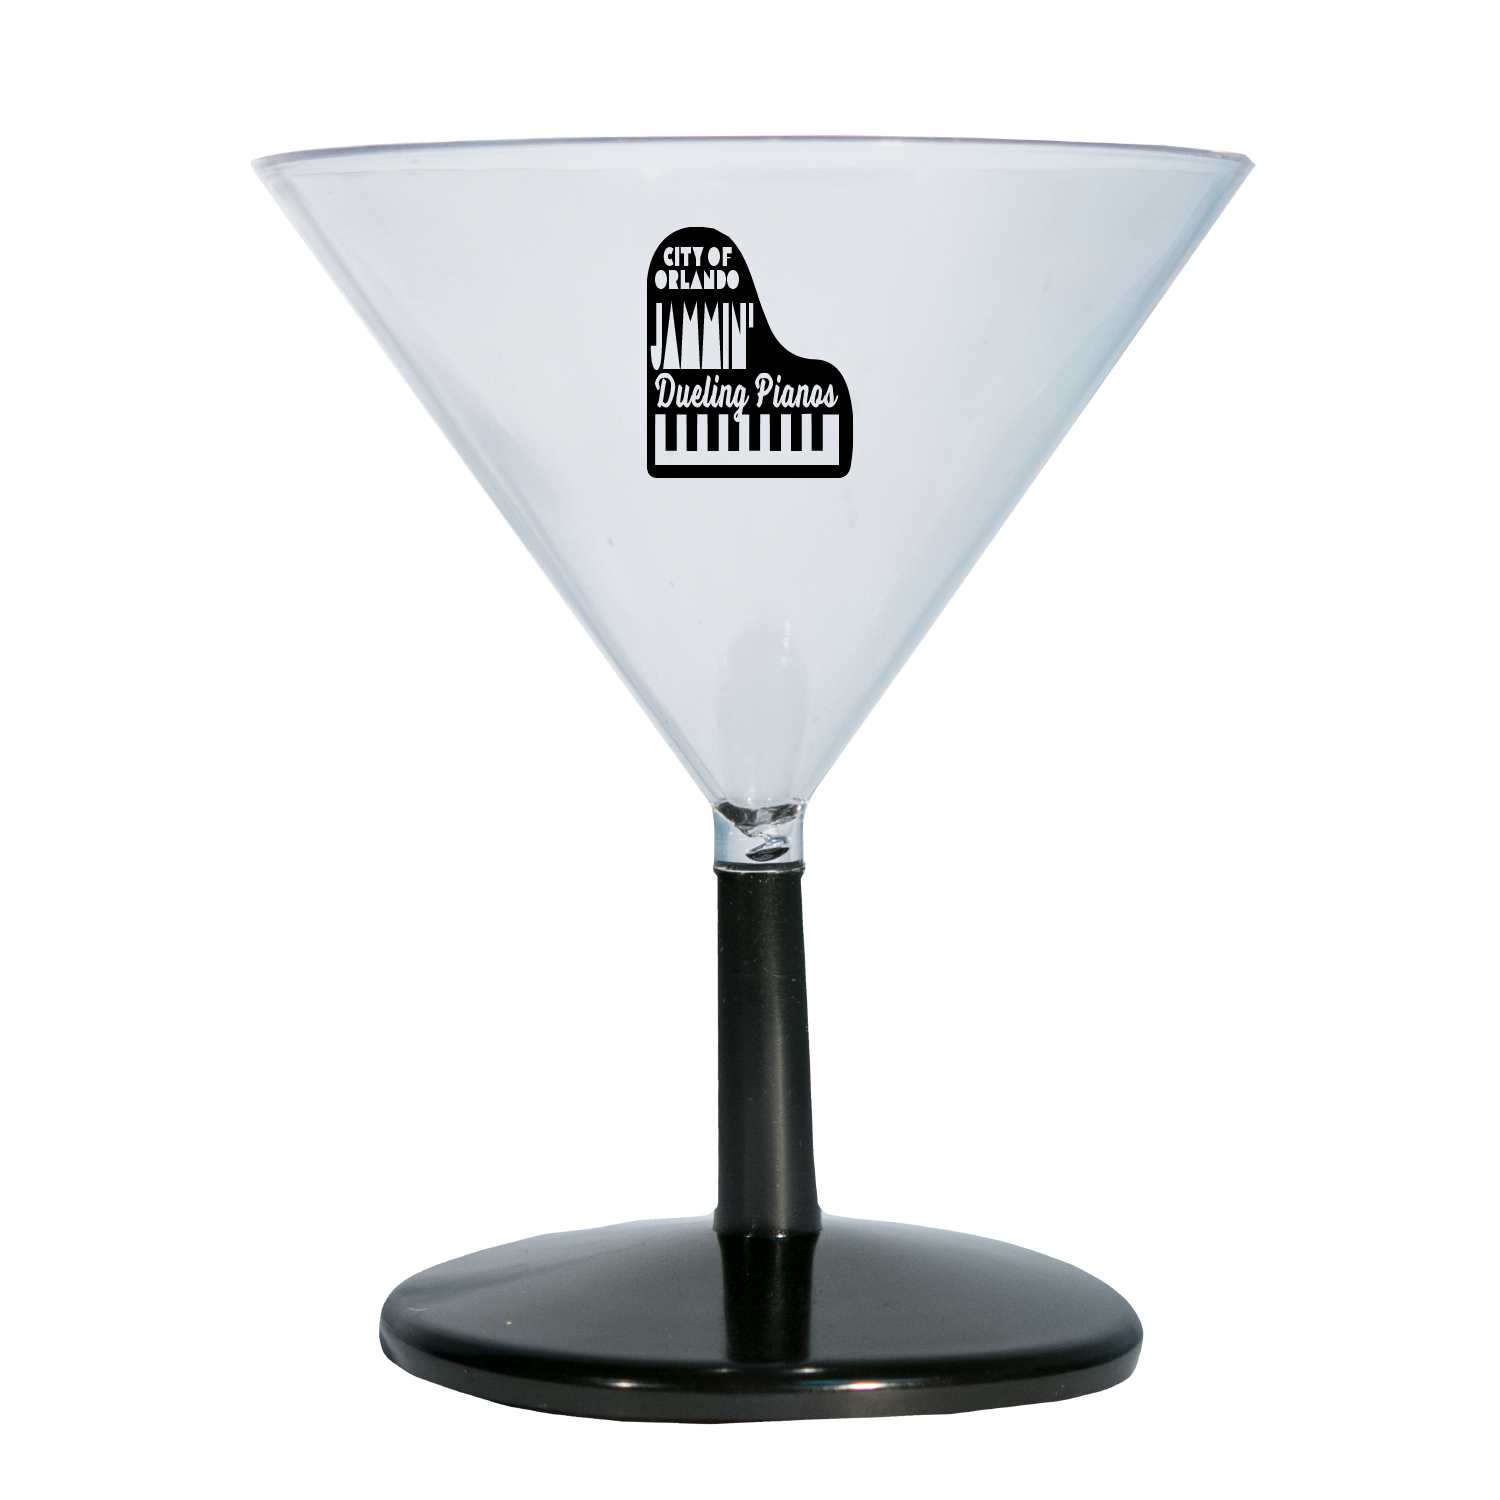 Personalized 10 oz. Plastic Martini Glasses